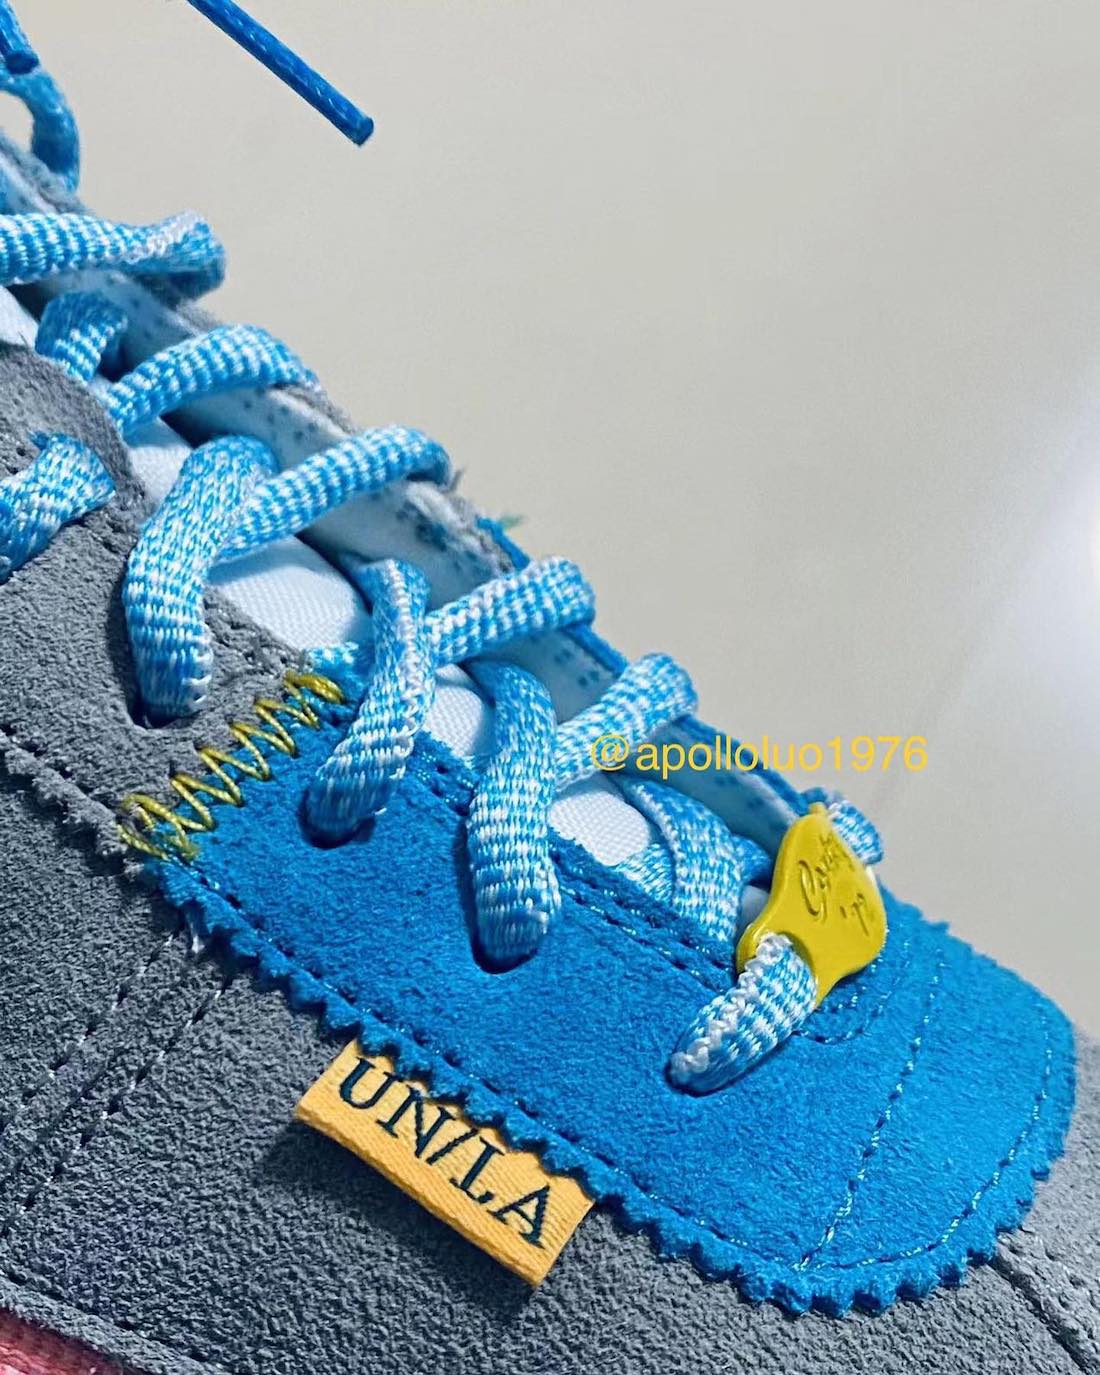 Union Nike Cortez Gris Azul Amarillo